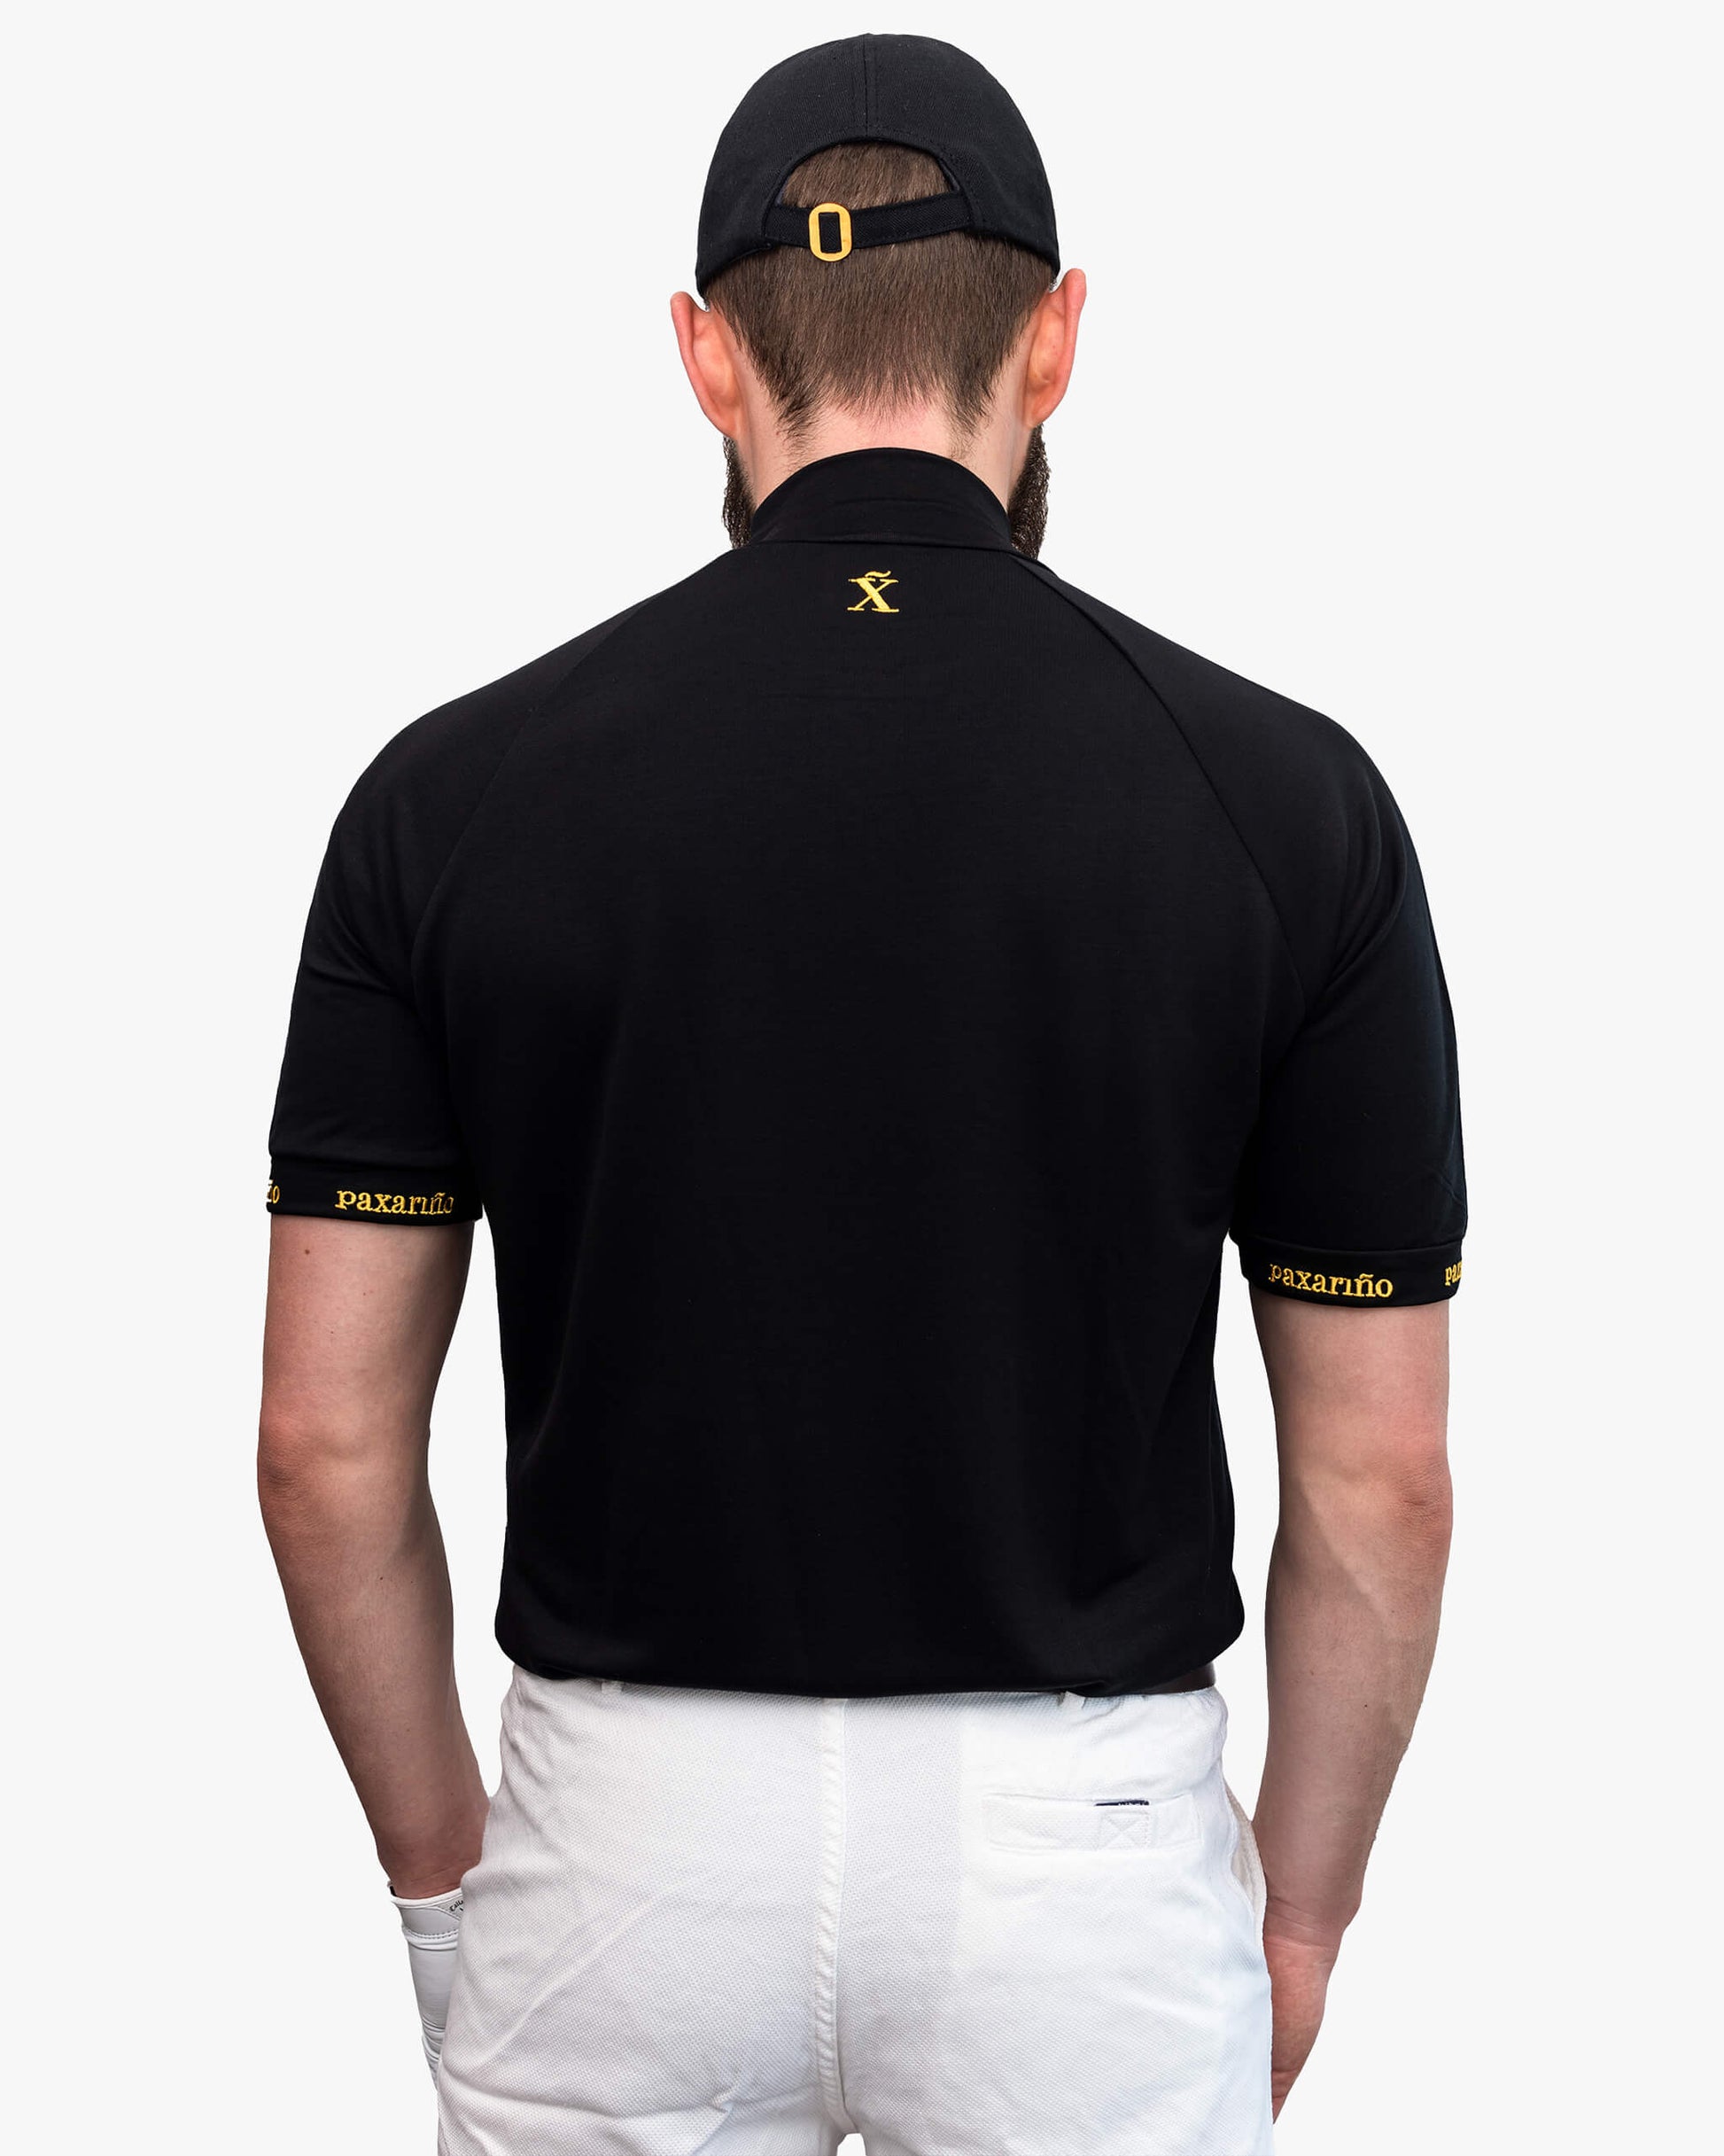 Rückansicht schwarzes Golf Shirt aus TENCEL™ für Herren von paxariño.